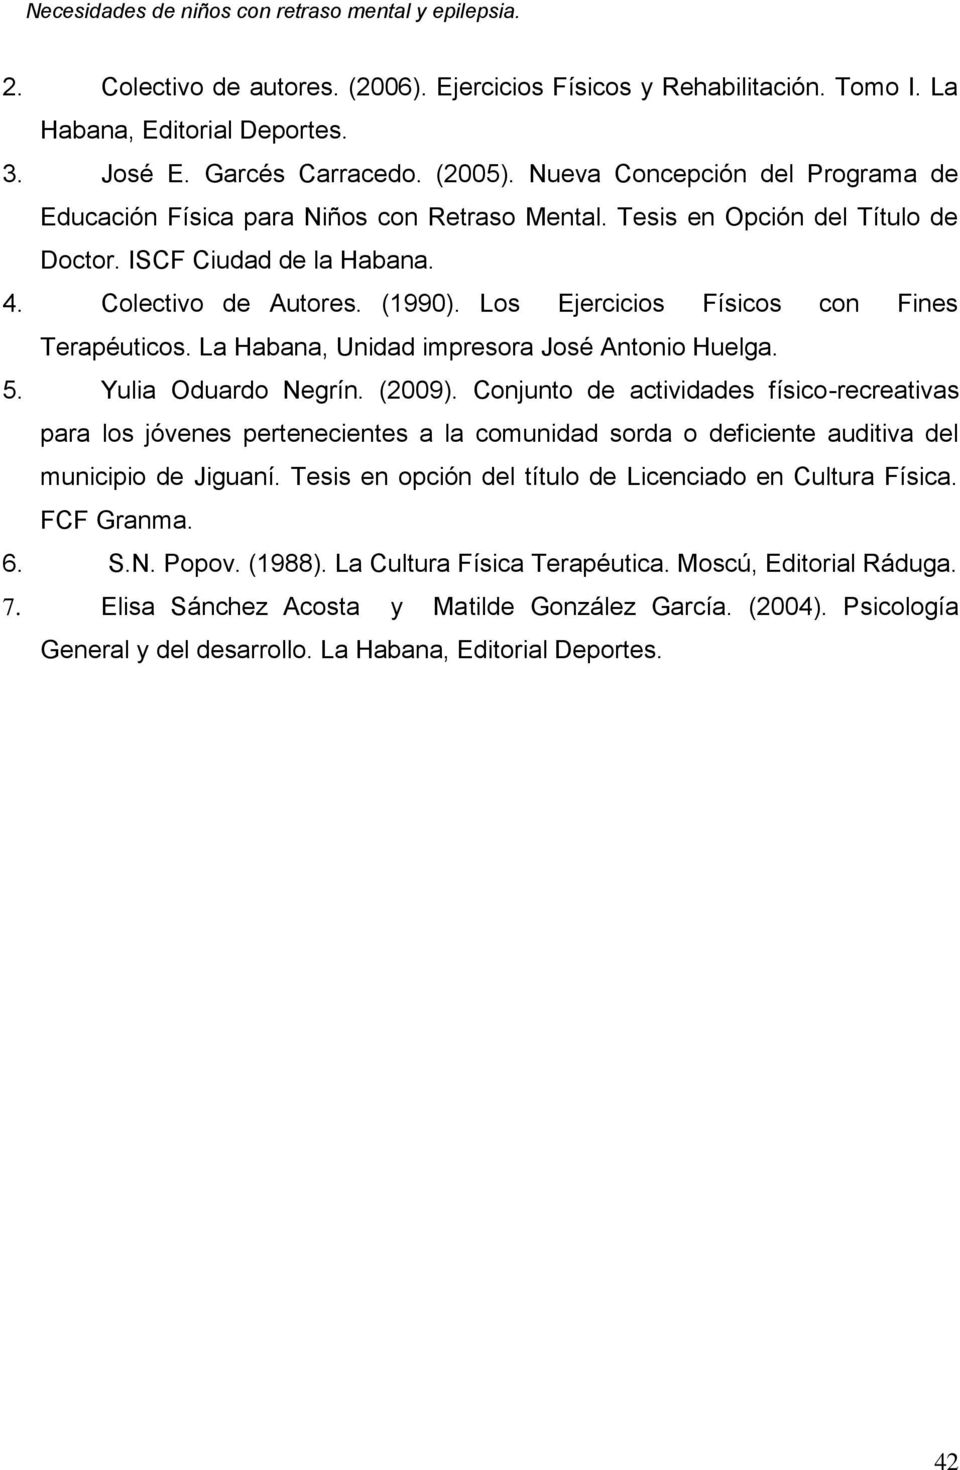 Los Ejercicios Físicos con Fines Terapéuticos. La Habana, Unidad impresora José Antonio Huelga. 5. Yulia Oduardo Negrín. (2009).